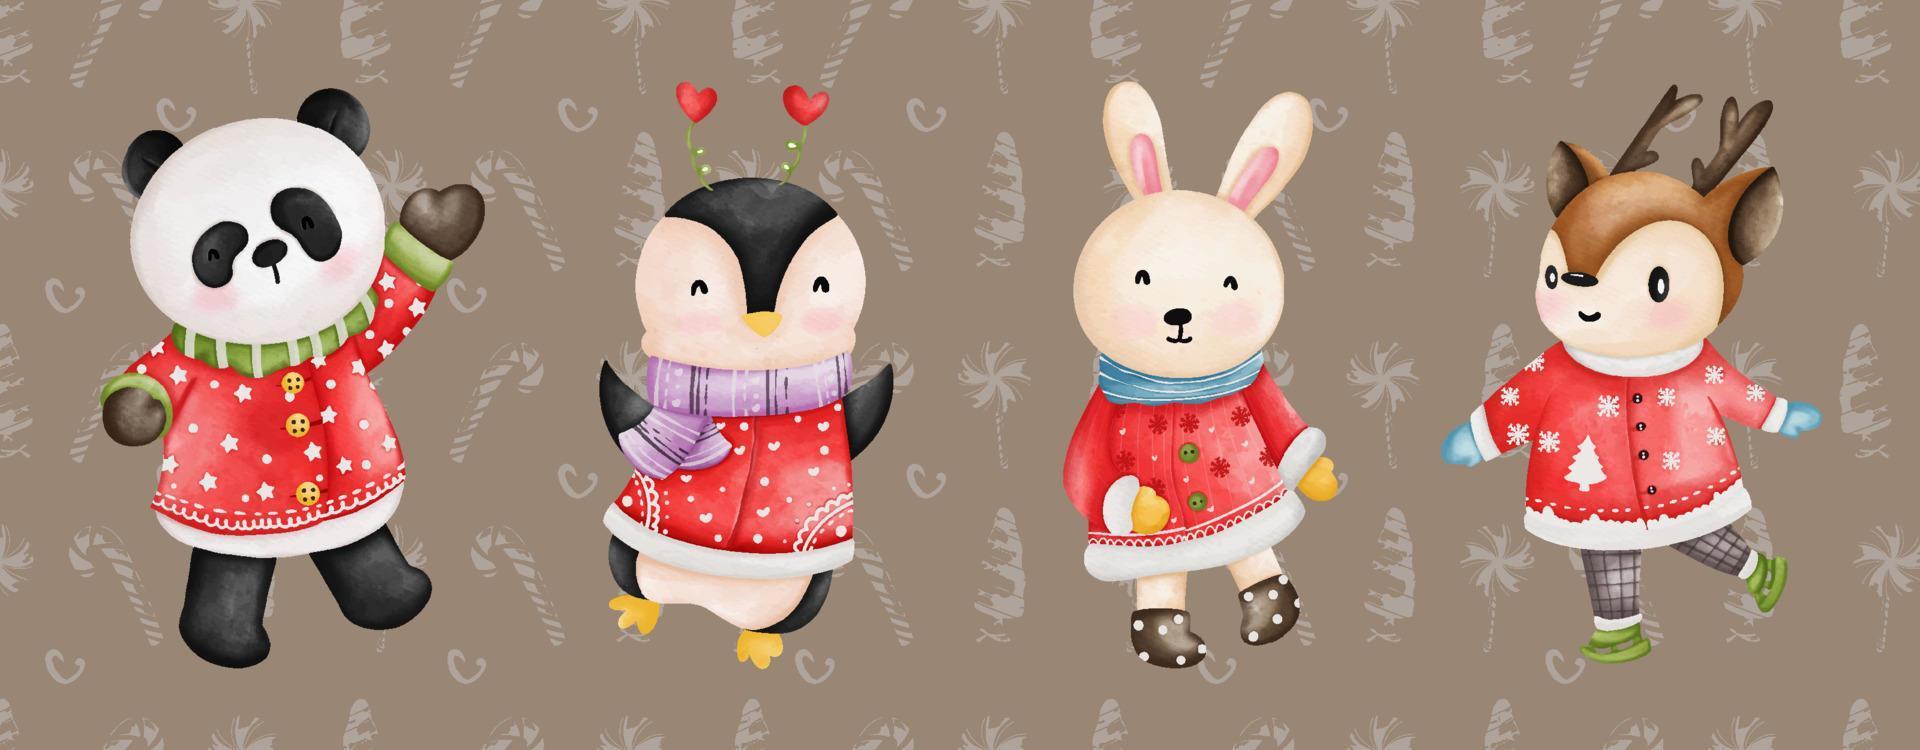 söt panda, pingvin, kanin, kanin, rådjur i santa kostym, vattenfärg jul djur- illustration vektor